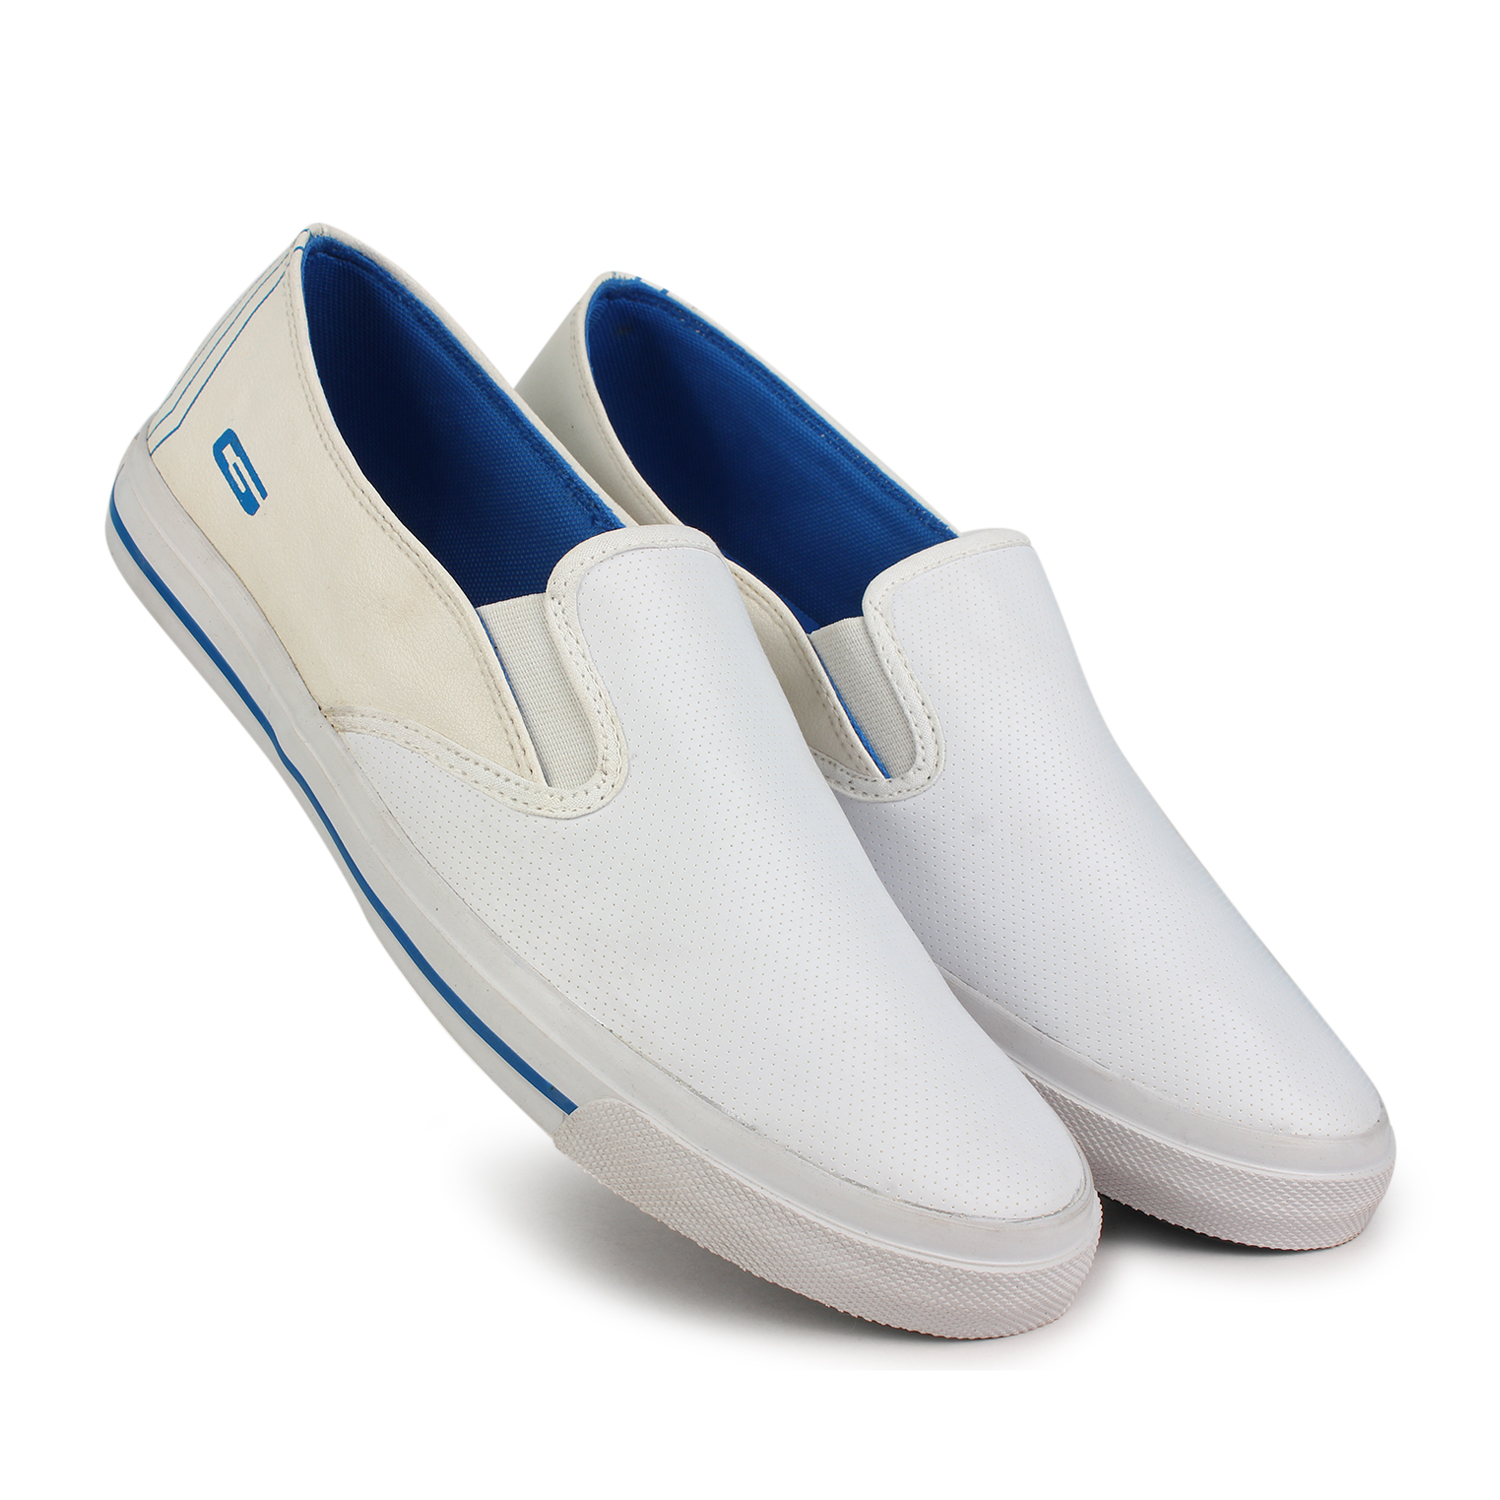 Buy Goldstar Men's White Slip on Sneakers Online @ ₹499 from ShopClues